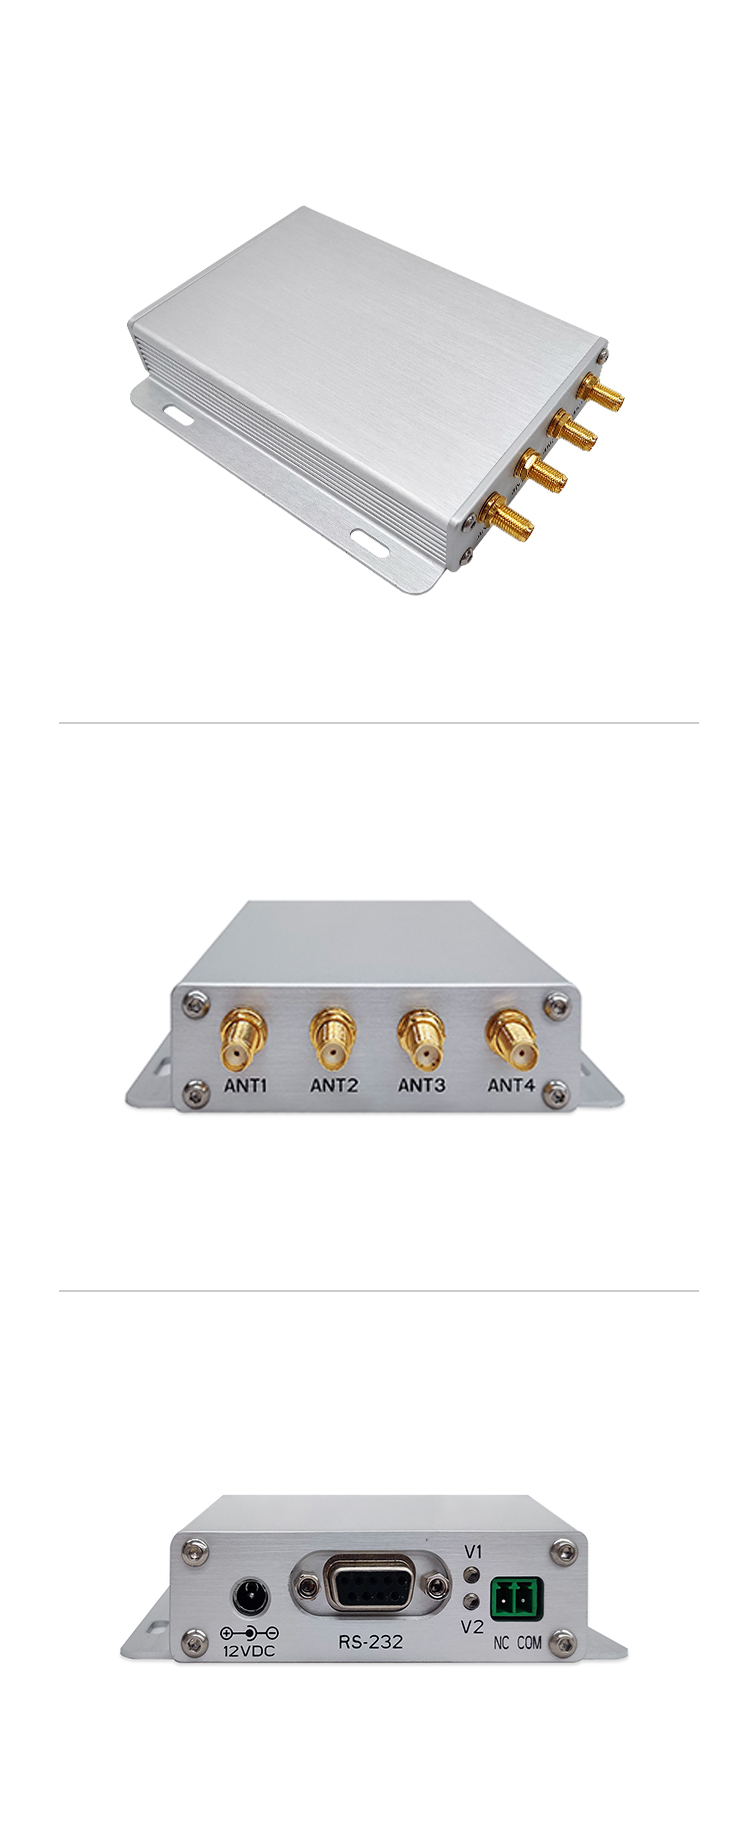 Medium Power UHF RFID Reader, Gen2 UHF RFID Reader, UHF RFID Reader